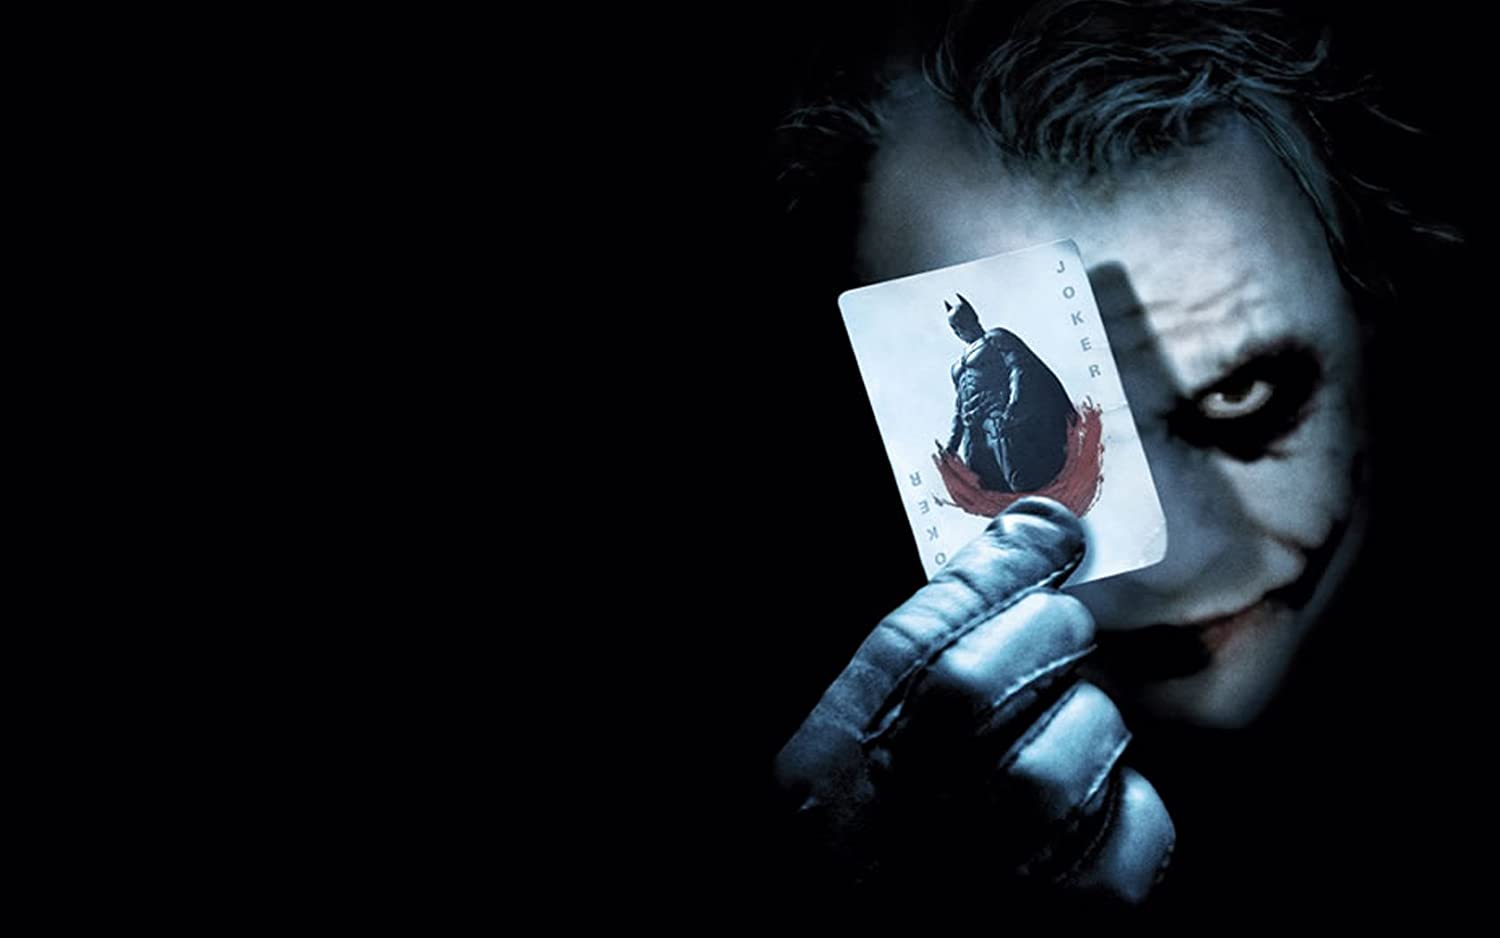 Posterhouzz Movie The Dark Knight Batman Movies Joker HD Wallpaper Background Fine Art Paper Print Poster_** MOV2268: Amazon.in: Home & Kitchen